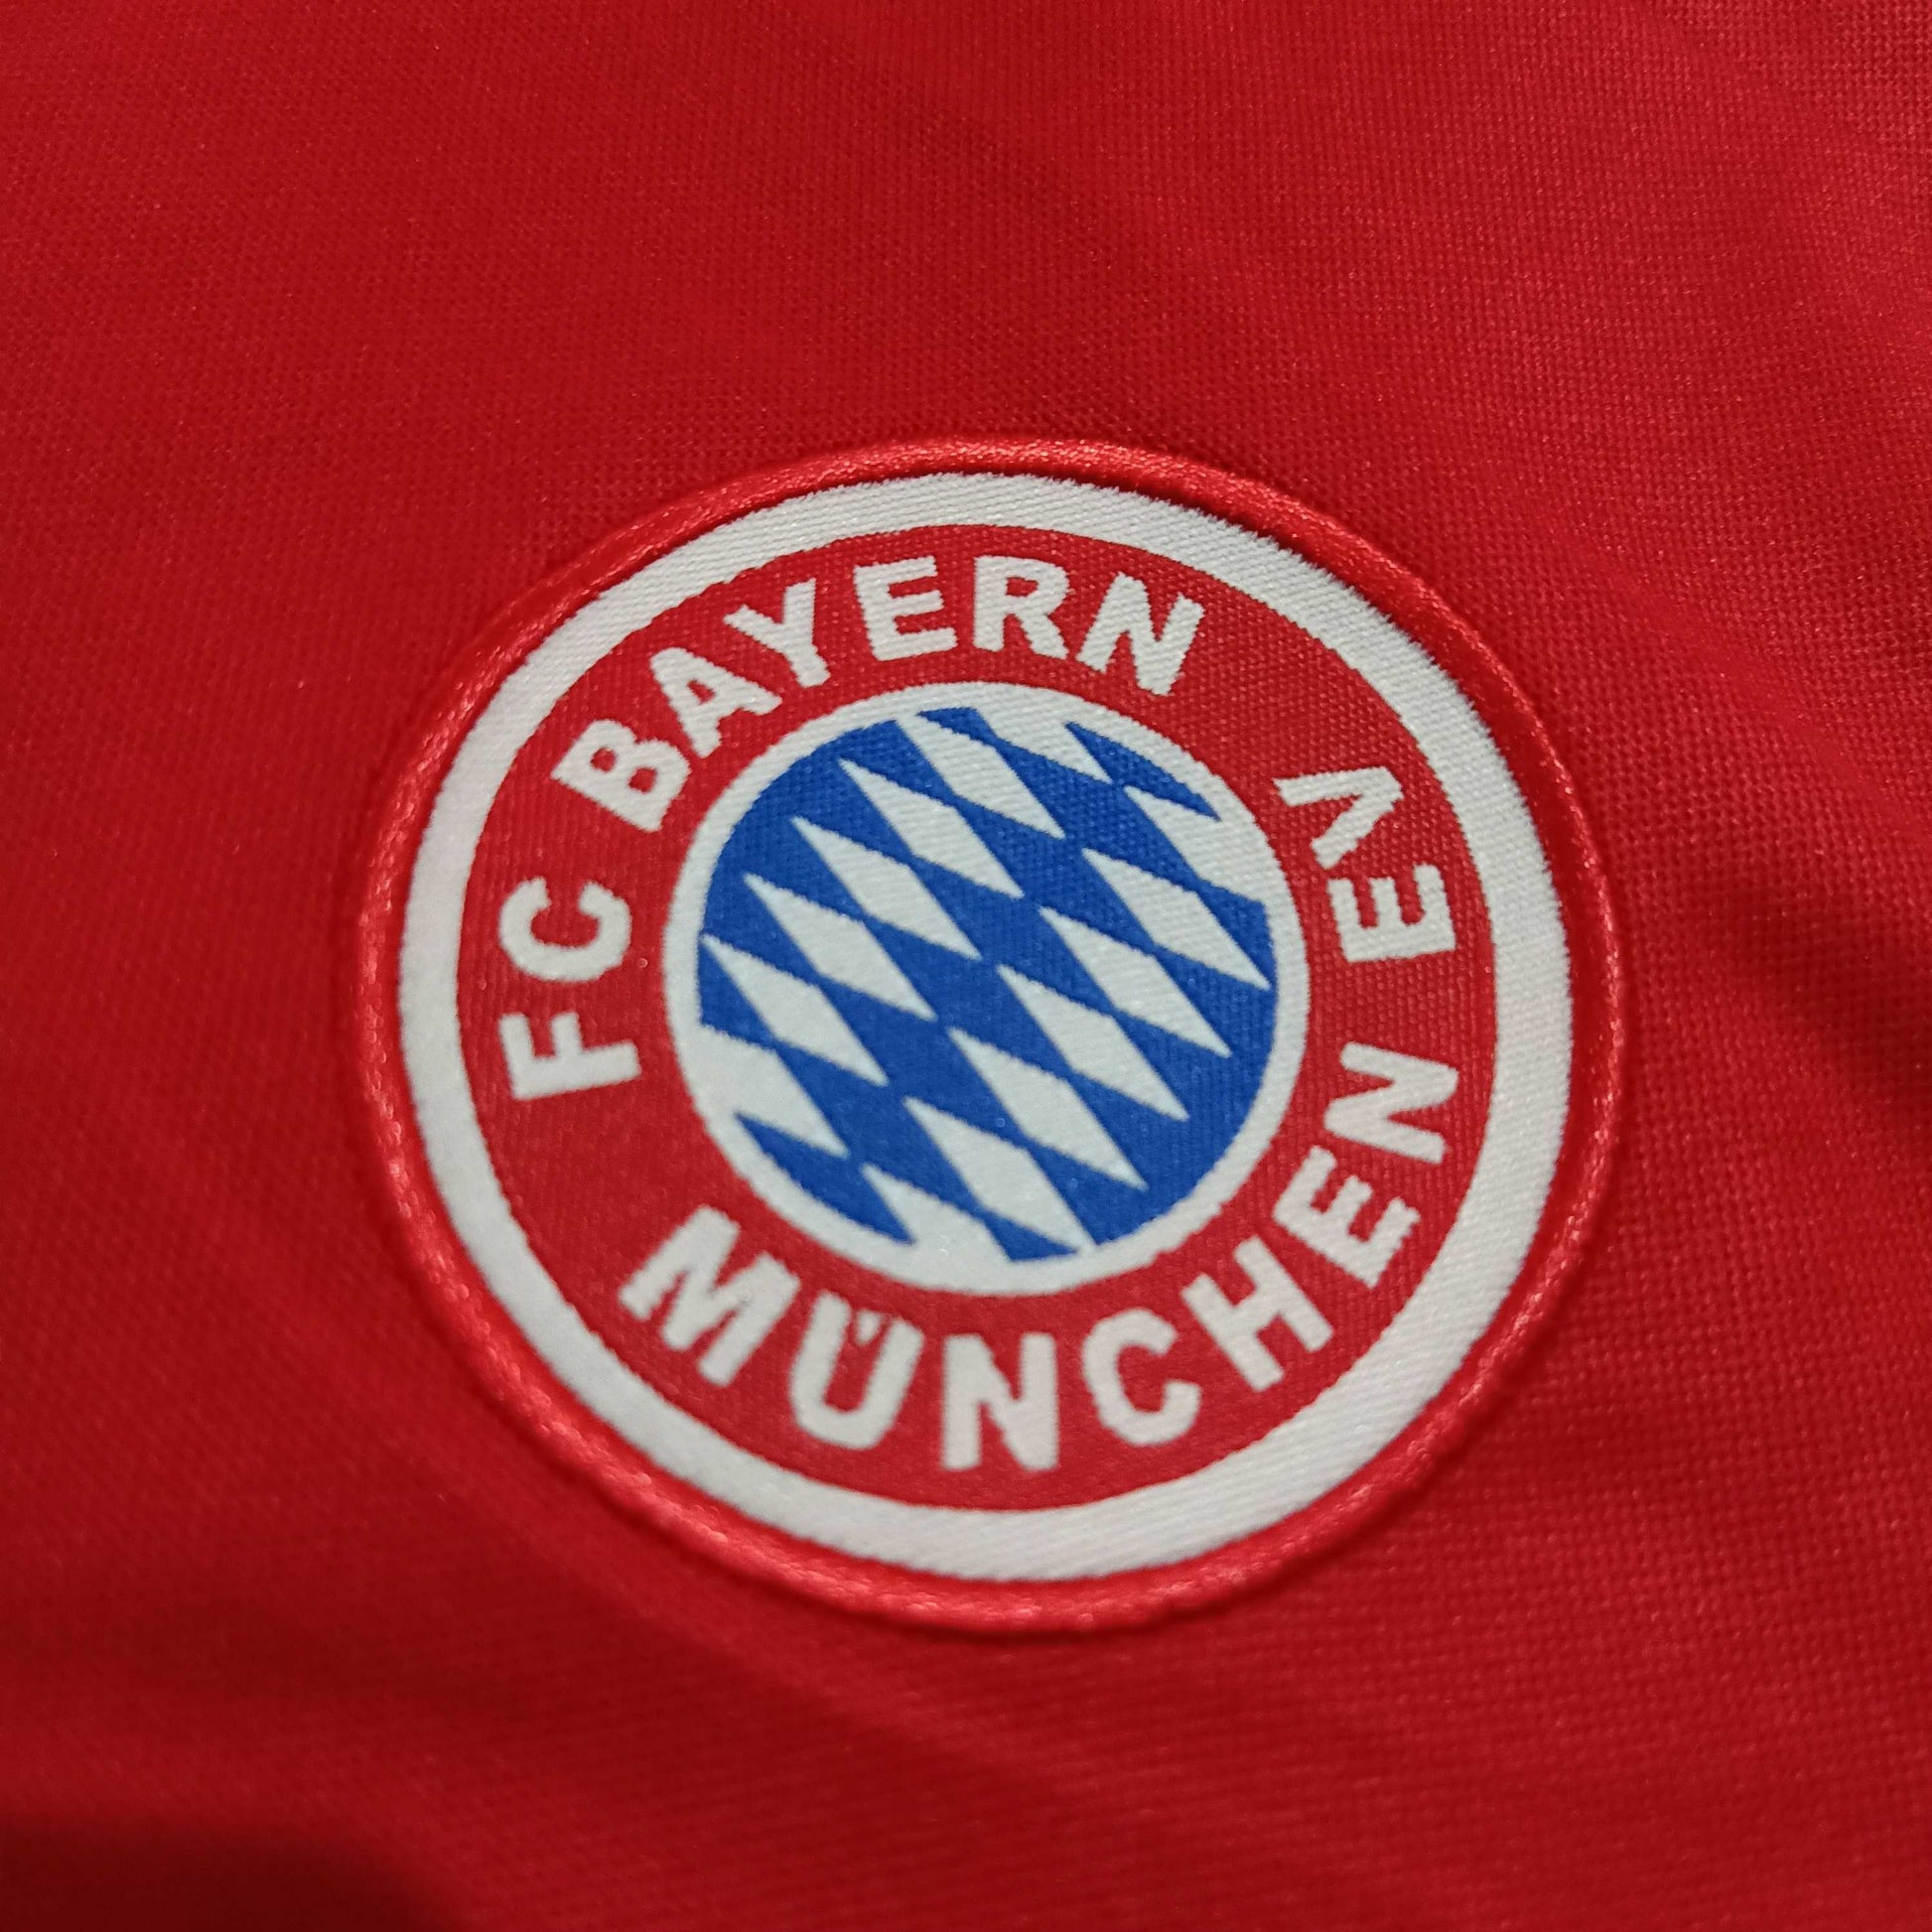 1993-95 Bayern Munich Home Shirt - ClassicFootballJersey